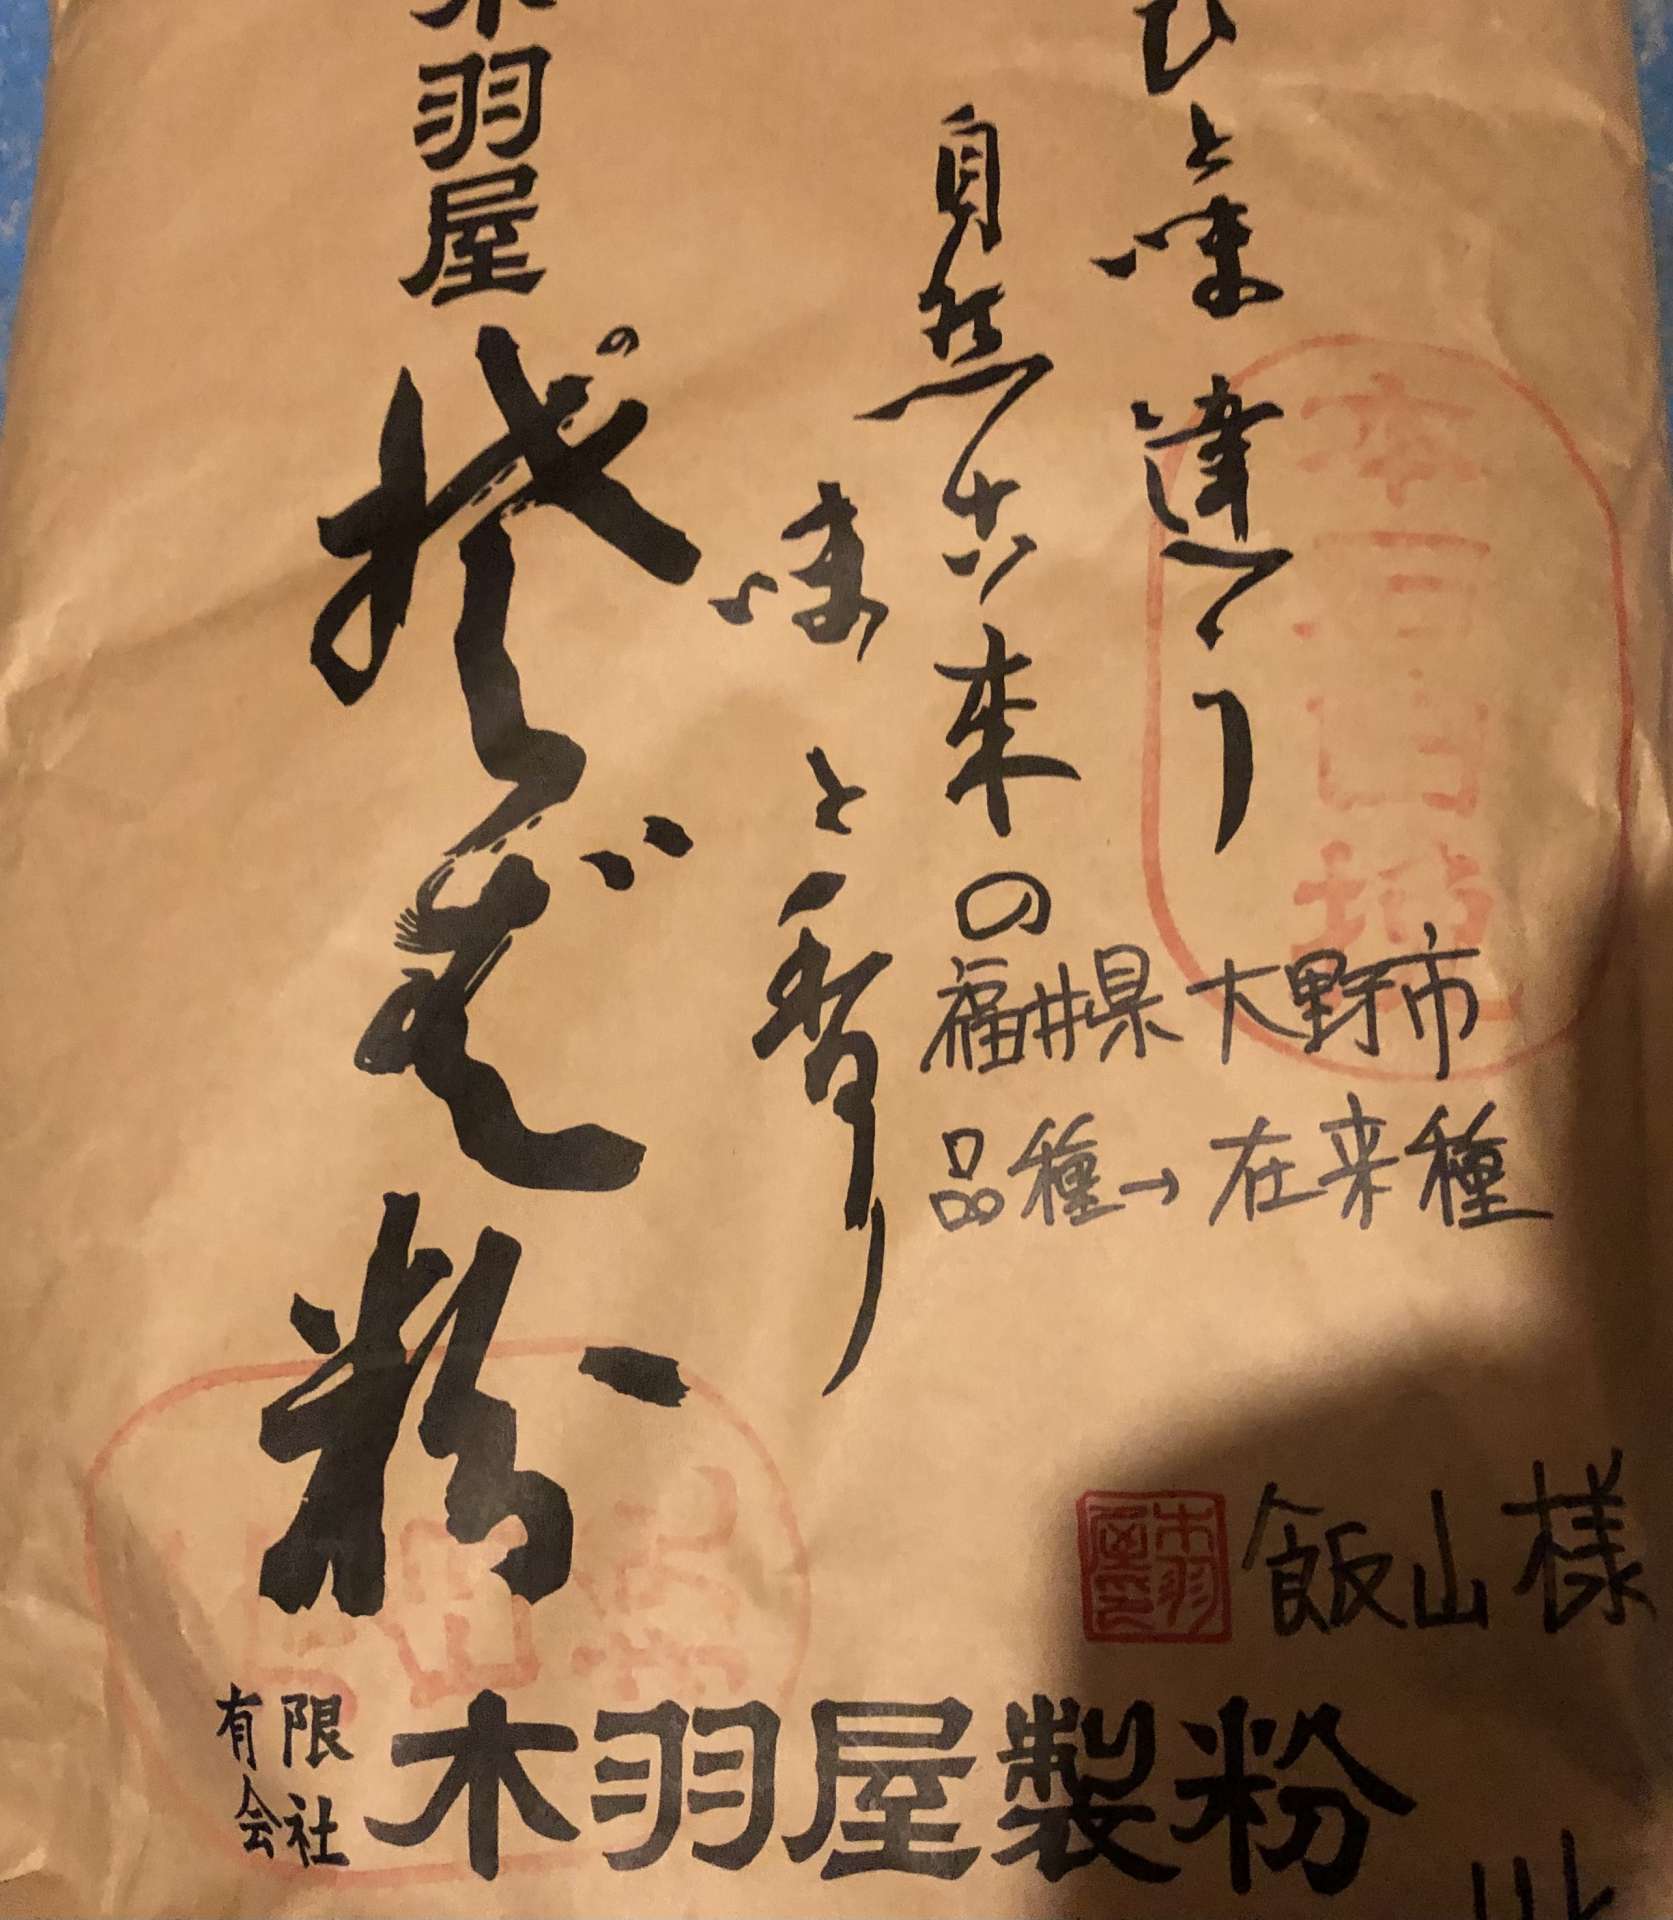 今月の蕎麦粉は福井県大野産です。香り高き蕎麦をご堪能下さい。